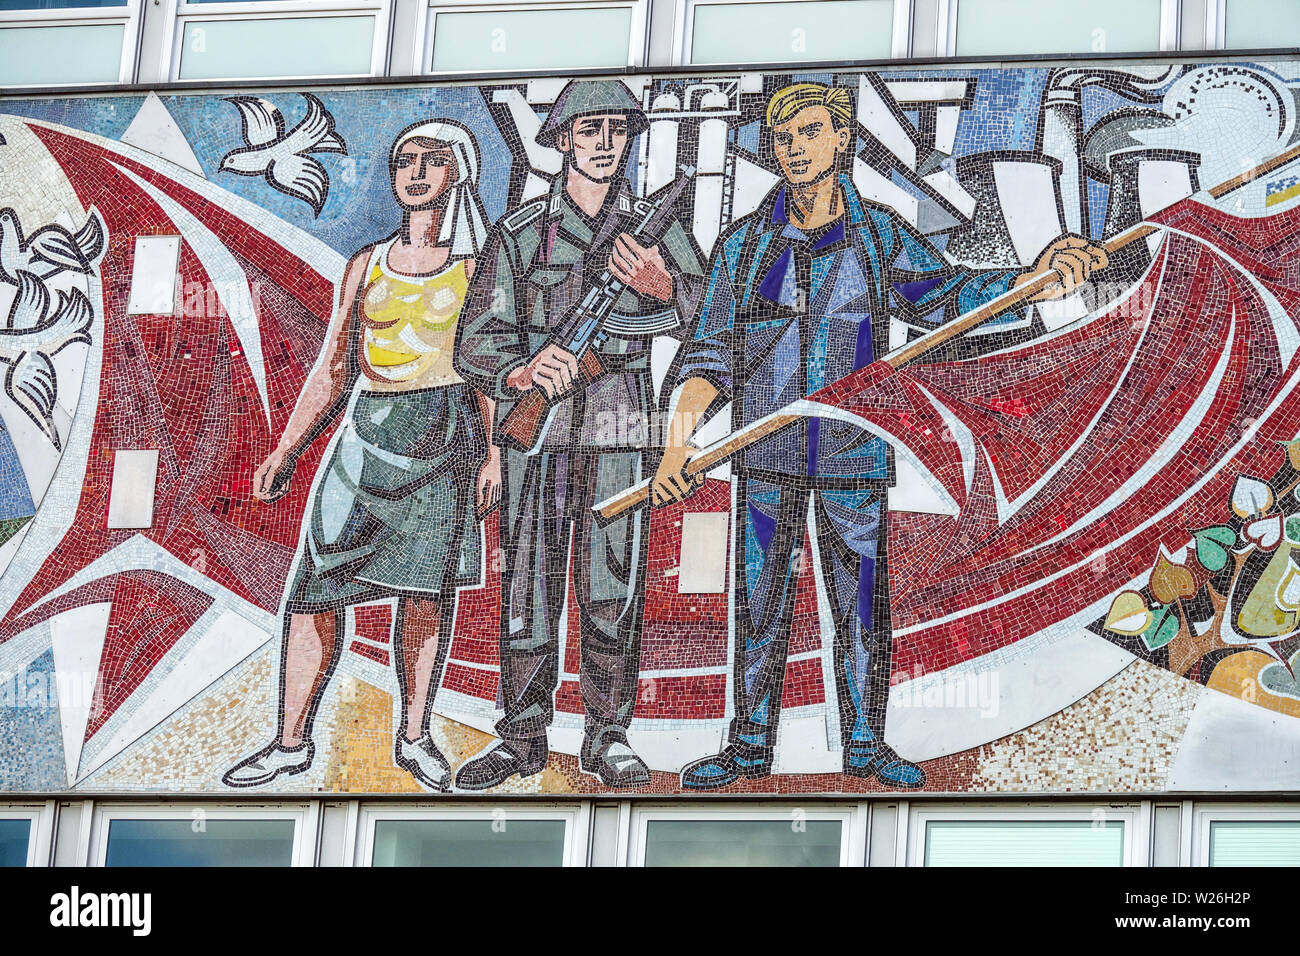 Mosaïque de l'art du réalisme socialiste sur un bâtiment années 1960 travaux de Walter Womacka sur la façade Haus des Lehrers, Berlin Allemagne art communiste propagande DDR Banque D'Images